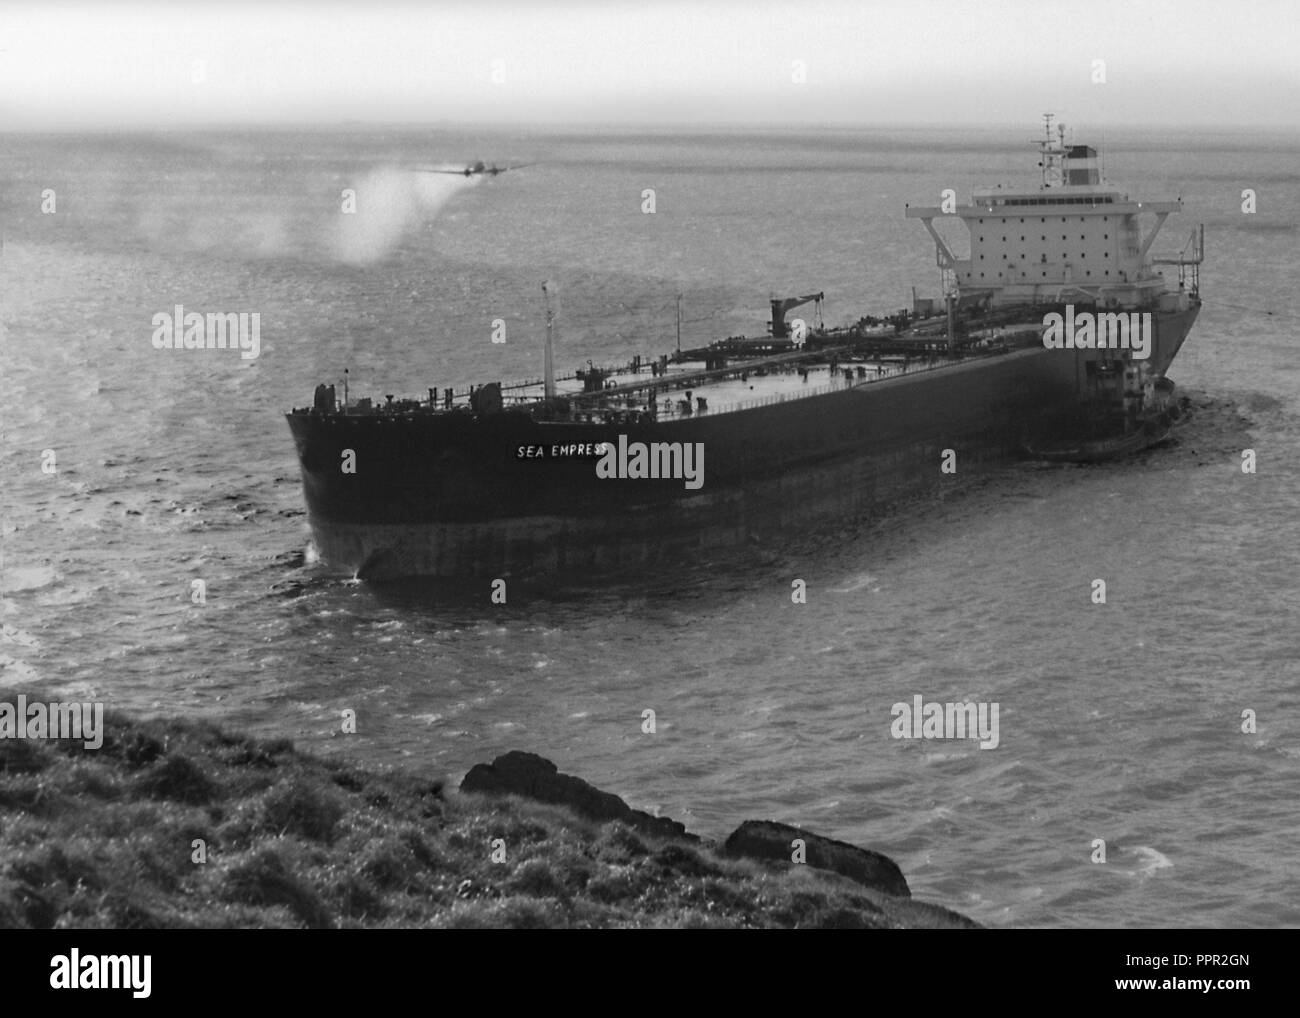 Sea Empress fuoriuscite di olio in entrata per il Milford Haven fluviale in Pembrokeshire, Regno Unito Galles il 15 febbraio 1996 e si è messo a terra dopo aver colpito le rocce. Qui illustrato con un aeromobile con spruzzatura di prodotti chimici per l'operazione di pulizia e disperdere le fuoriuscite di olio. In seguito alla fuoriuscita della Sea Empress è stato riparato e rinominato per cinque volte. In 2004, è stata venduta e si trasferisce a Chittagong come galleggianti di produzione, stoccaggio e offload dell'unità. Nel 2009, è stata acquisita da Oriental Ocean Shipping Holding PTE Ltd, rinominato Welwind MV e convertito al bulk carrier. Nel 2012, venne ribattezzata come vento 3. Foto Stock